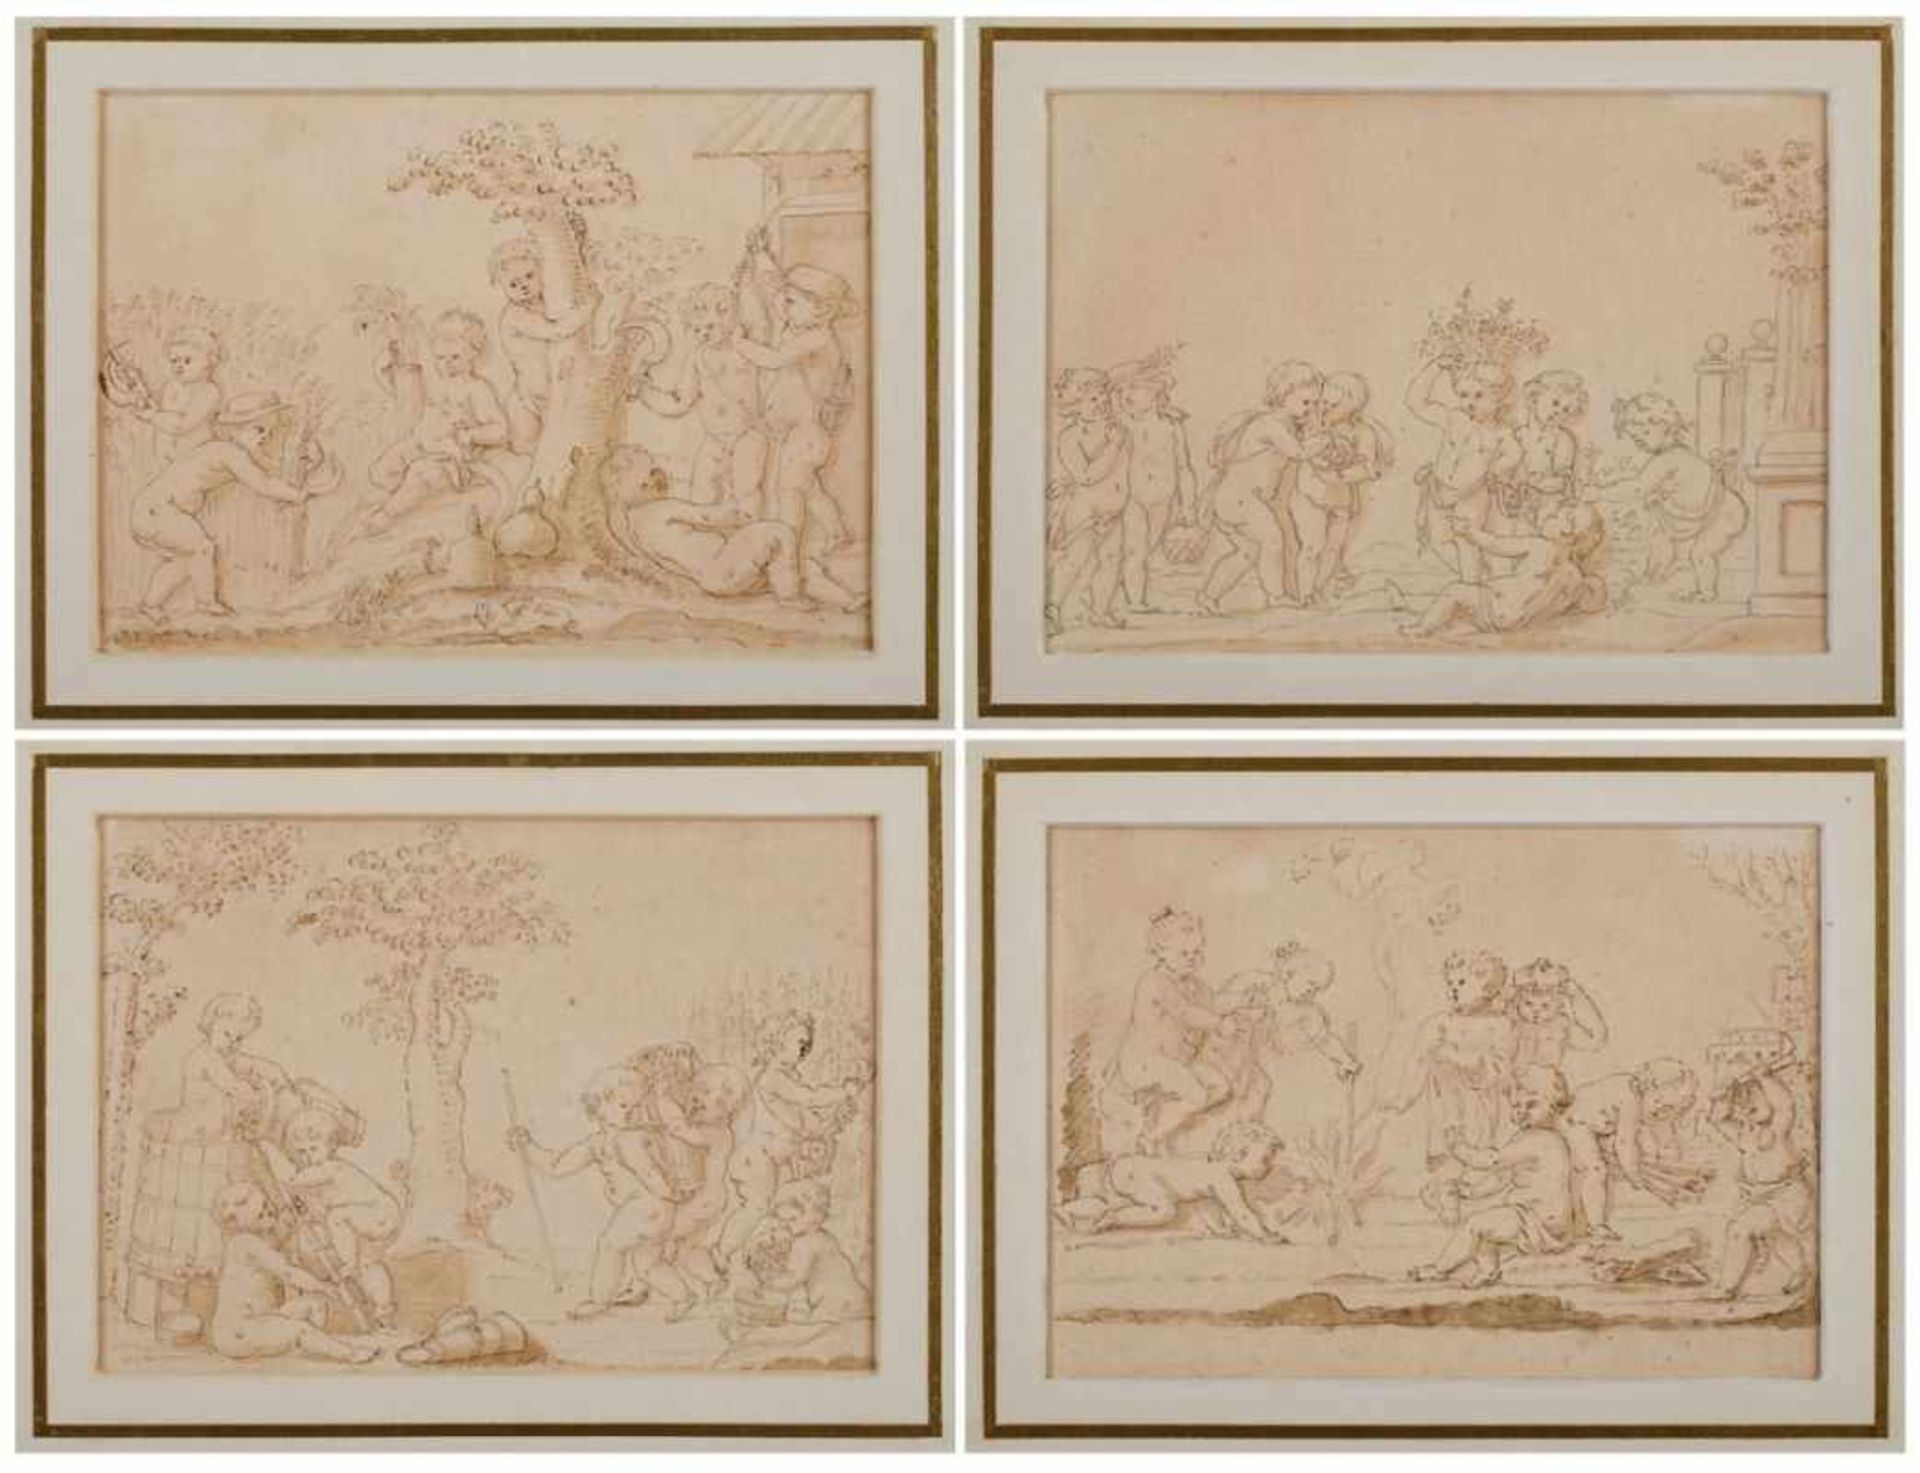 4 Federzeichnungen in grau u. braun, laviertJacob de Wit 1695 Amsterdam - 1754 Amsterdam "4